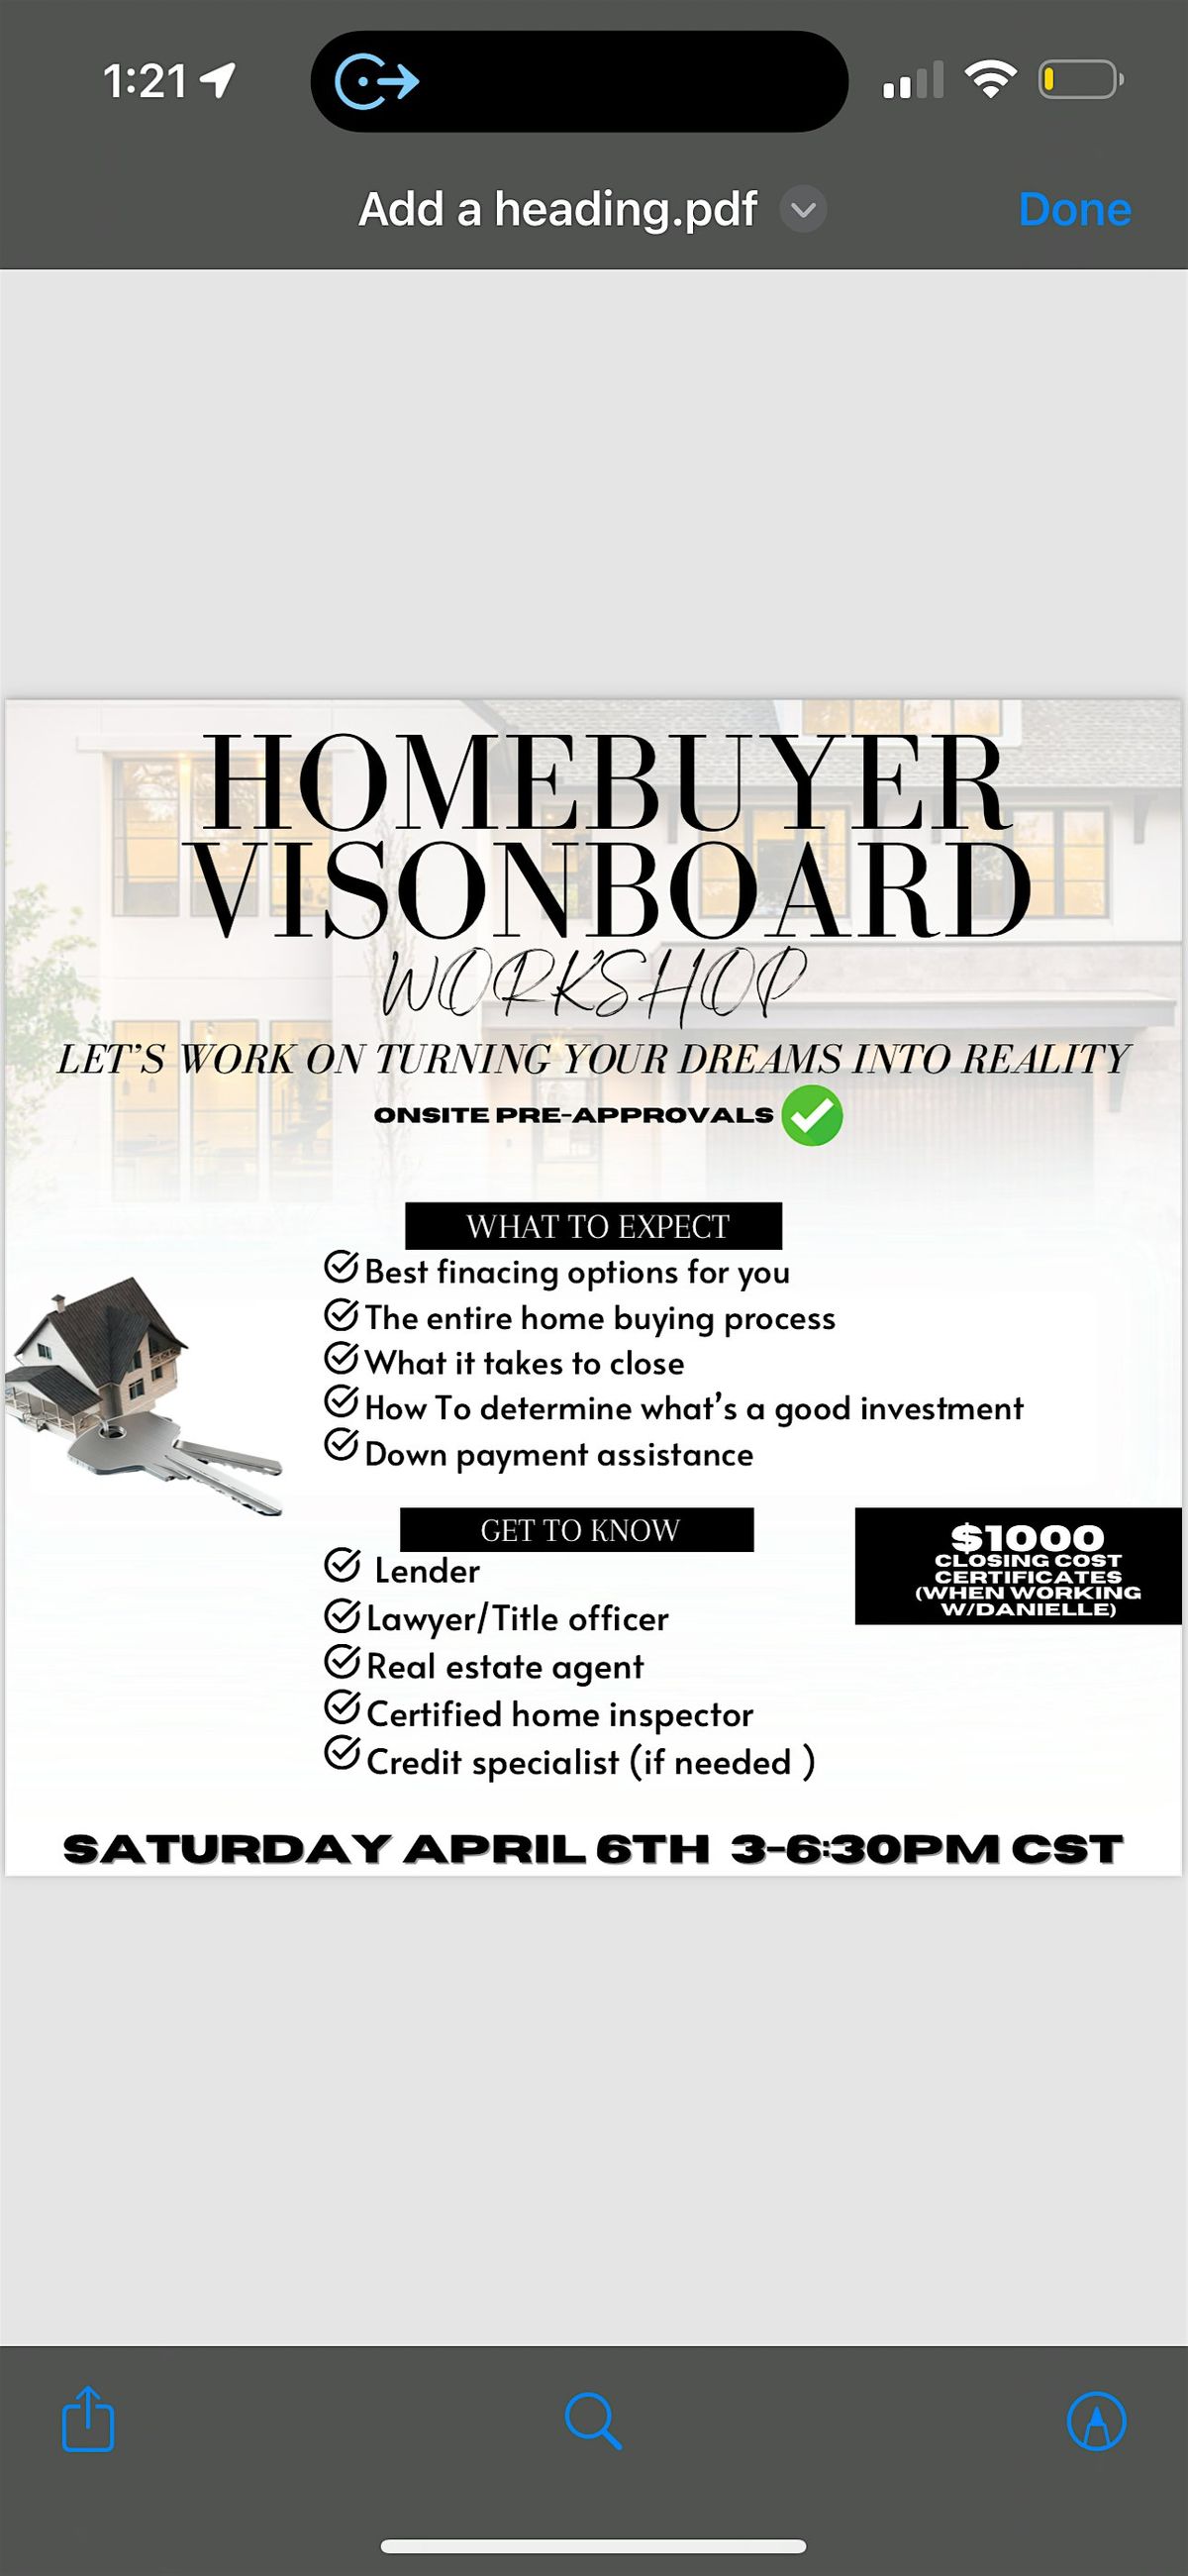 HomeBuyer Vision Board Workshop